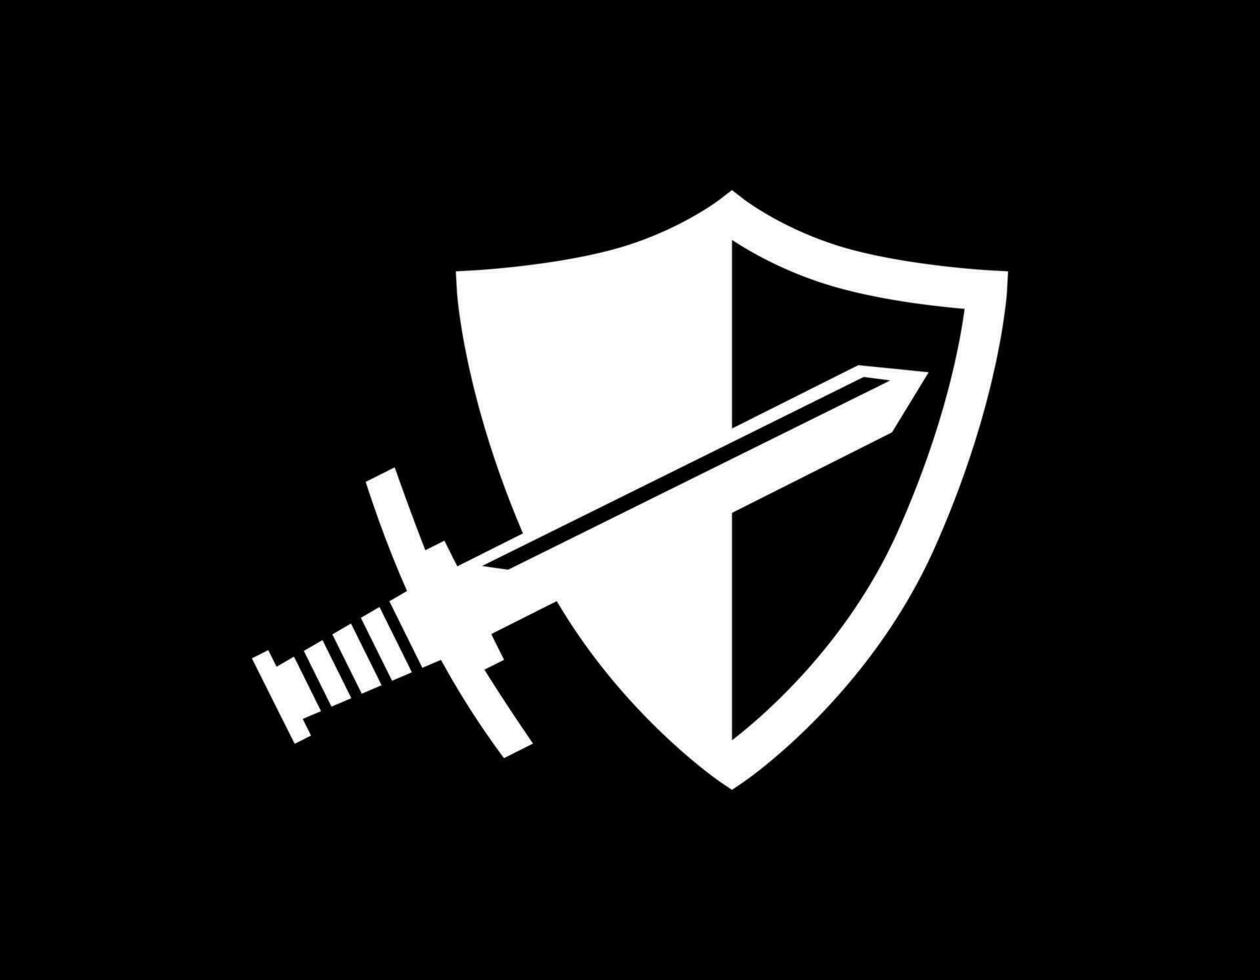 soltero espada y proteger emblema con negro. mínimo lujo símbolo de arma o batalla. vector ilustración de espada con proteccion concepto.